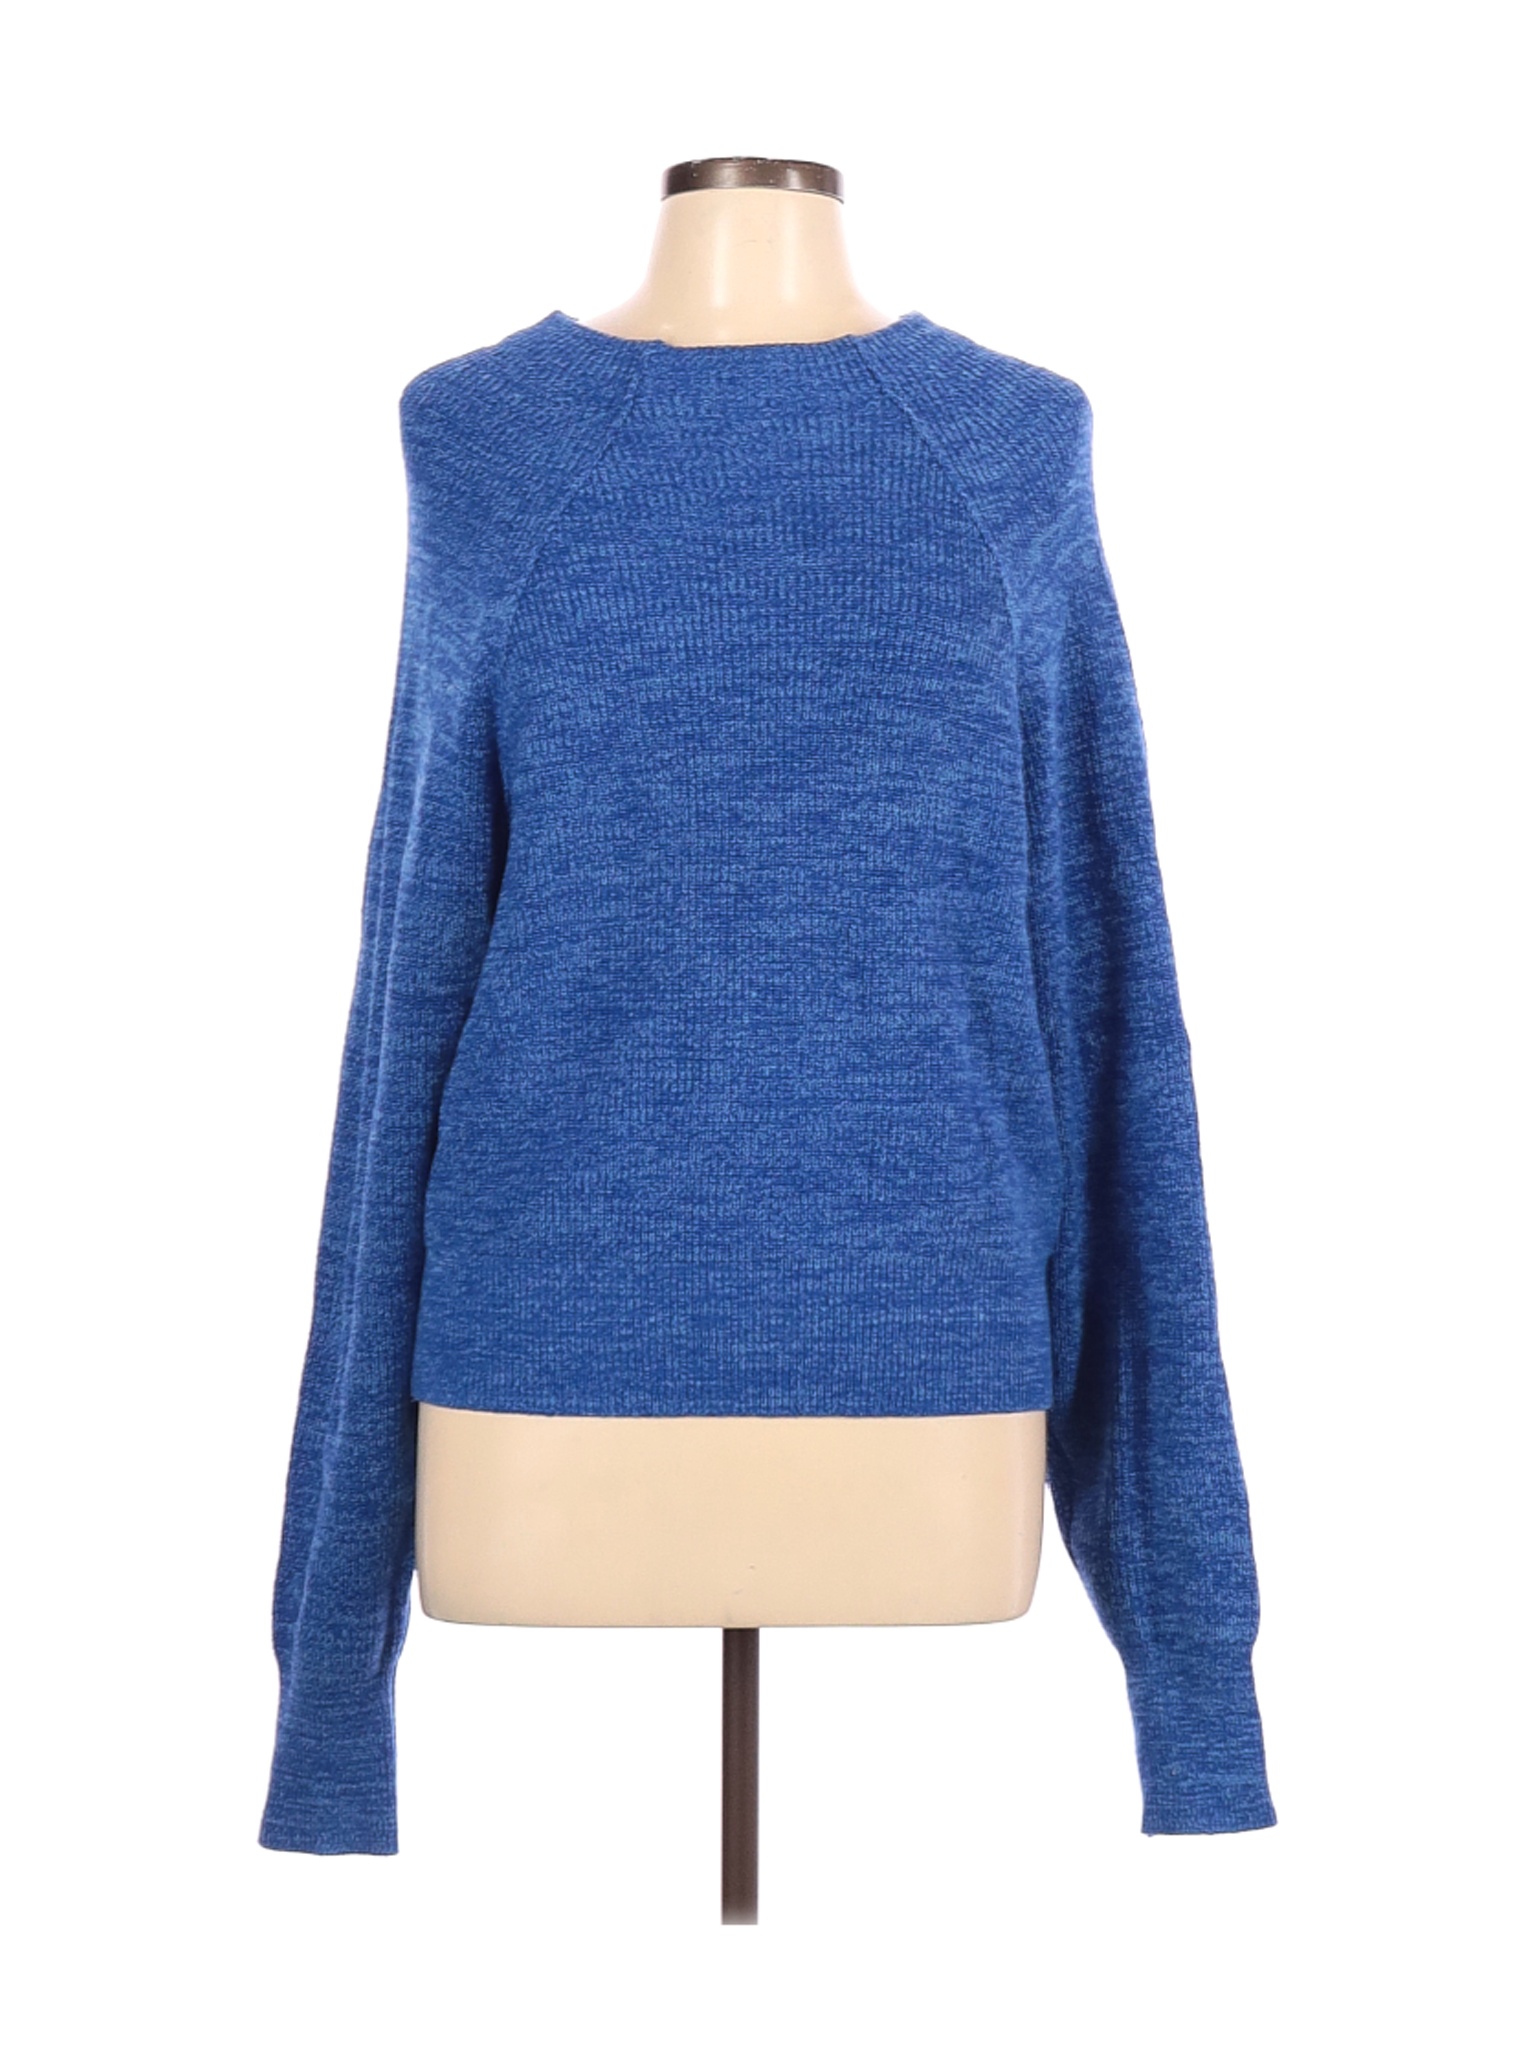 Free People Women Blue Pullover Sweater L | eBay